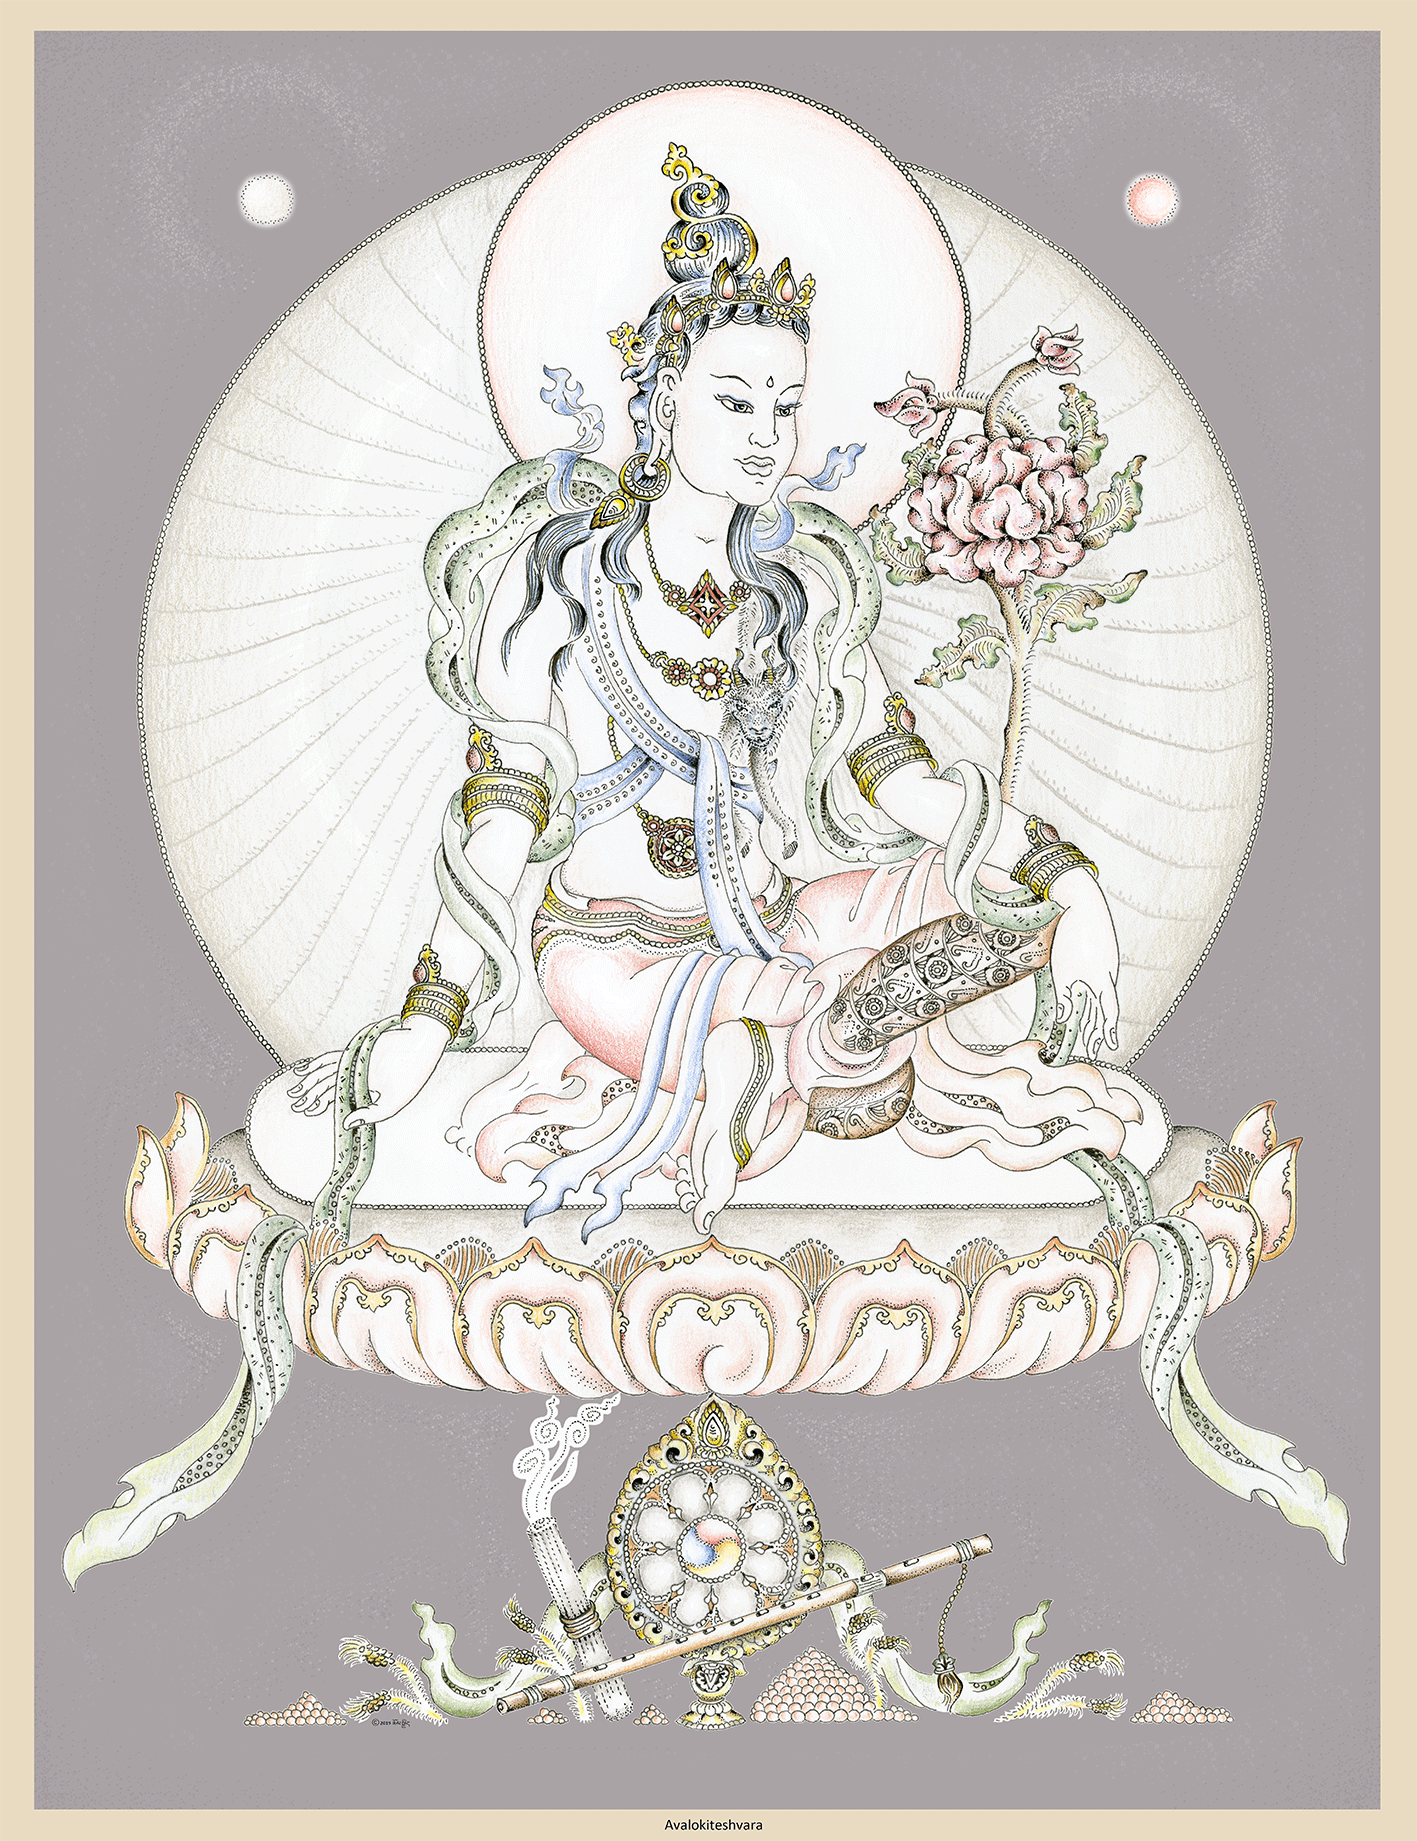 Avalokiteshvara – Chenrezig (Tib.)